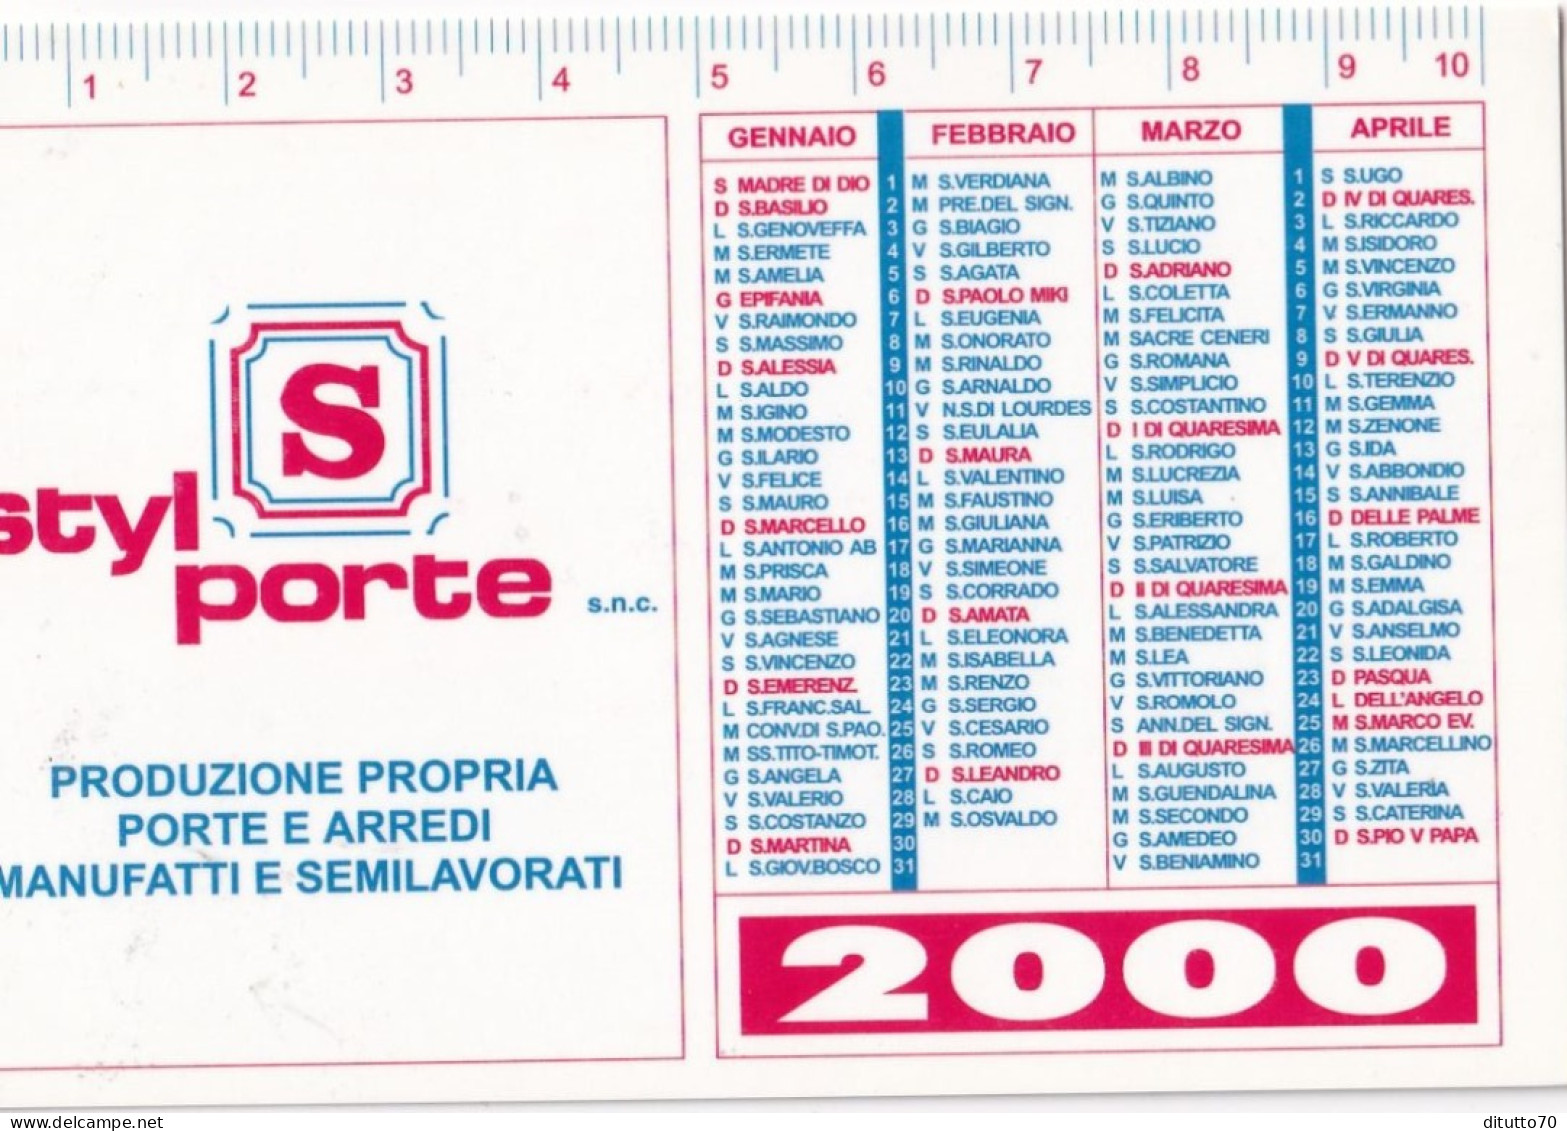 Calendarietto - Styl Porte - Rivalta - Torino - Anno 2000 - Tamaño Pequeño : 1991-00